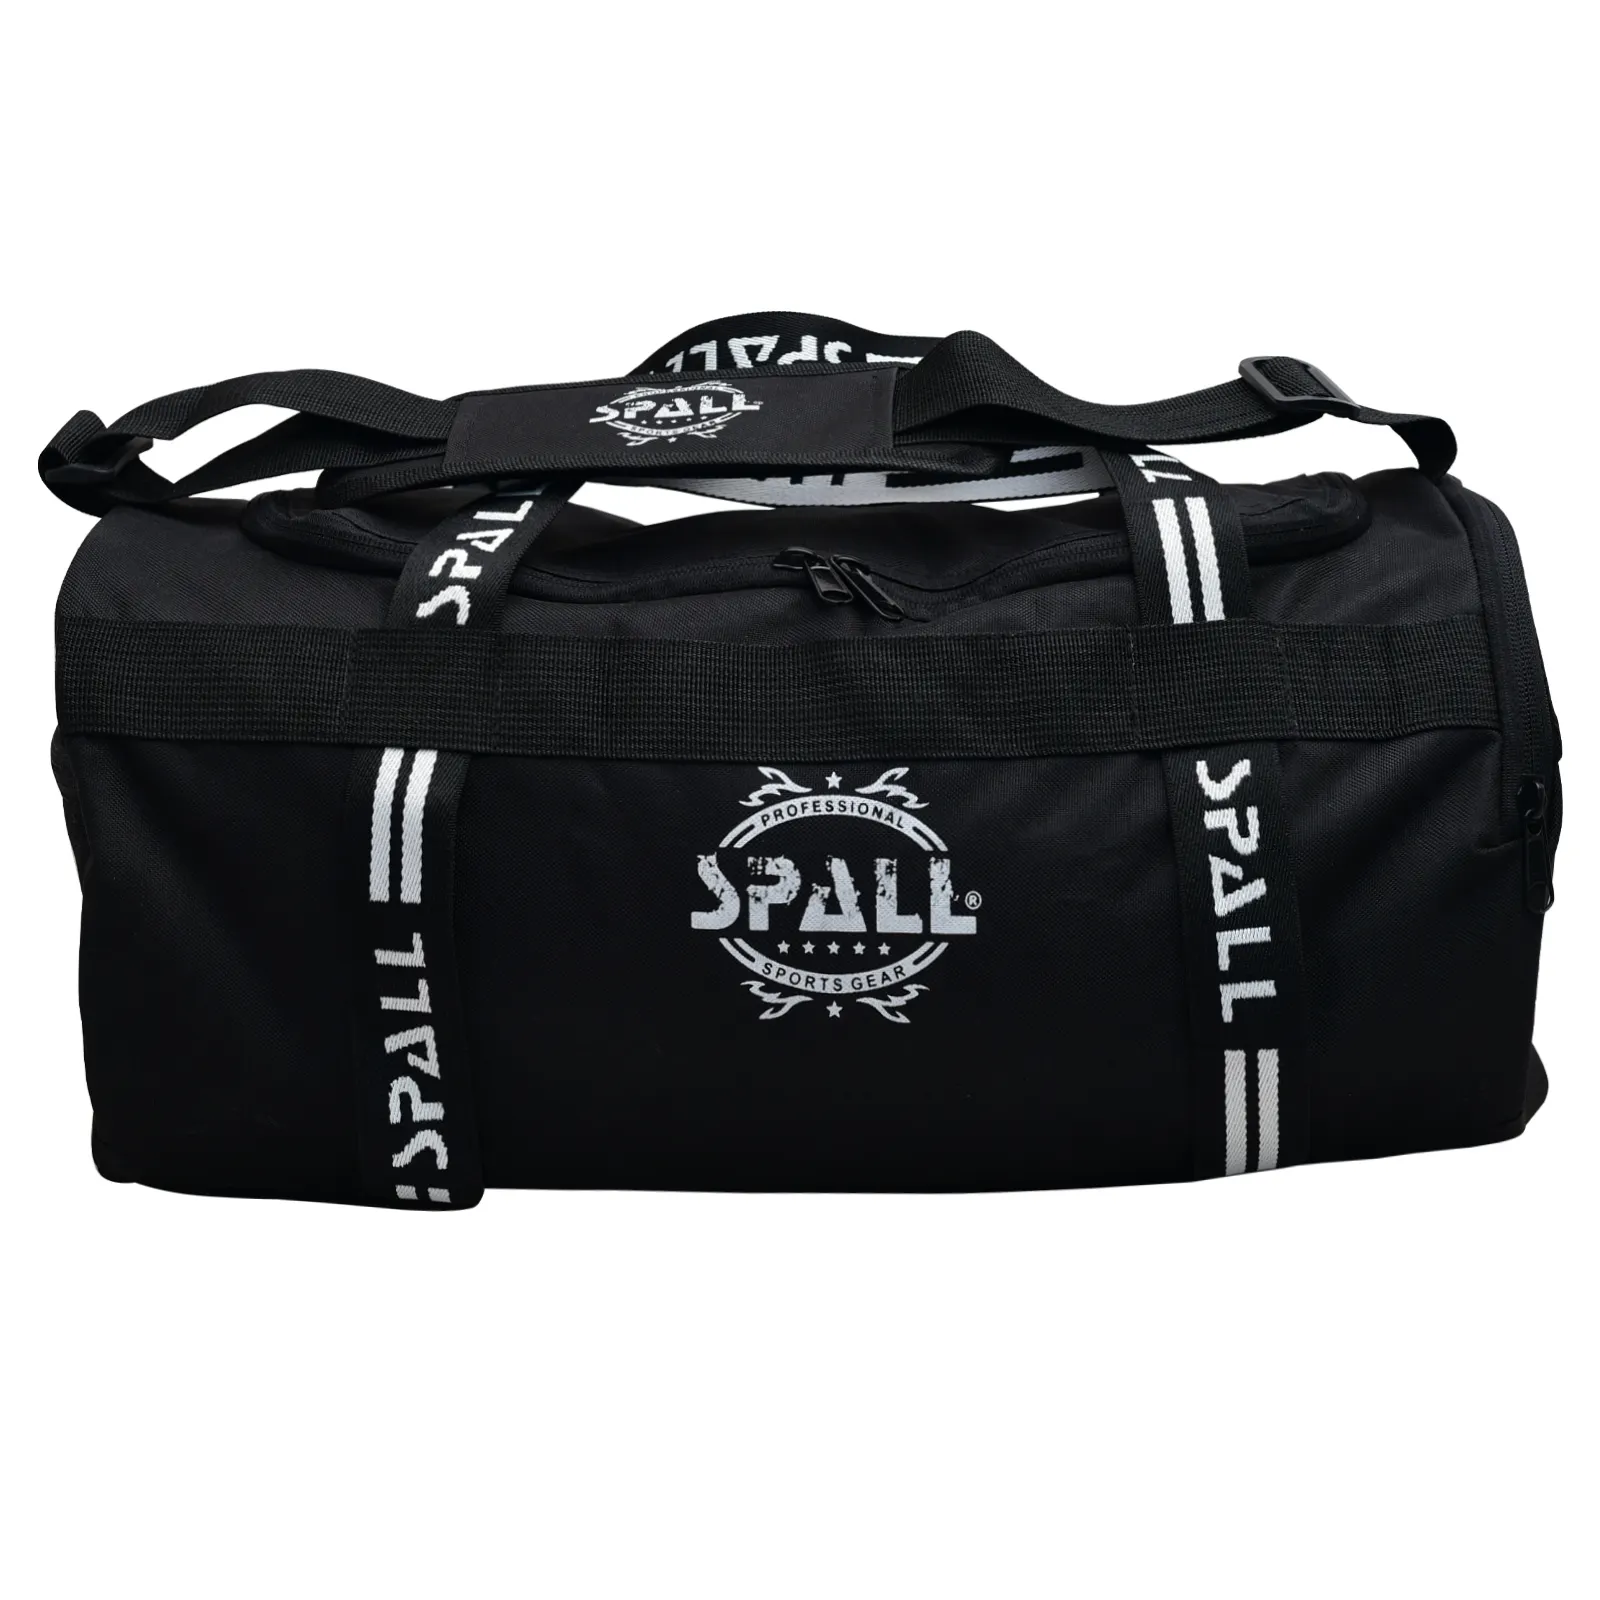 Spall silindir çanta dayanıklı Unisex spor çanta-seyahat için çok yönlü futbol taşıma çantası spor basketbol moda spor açık